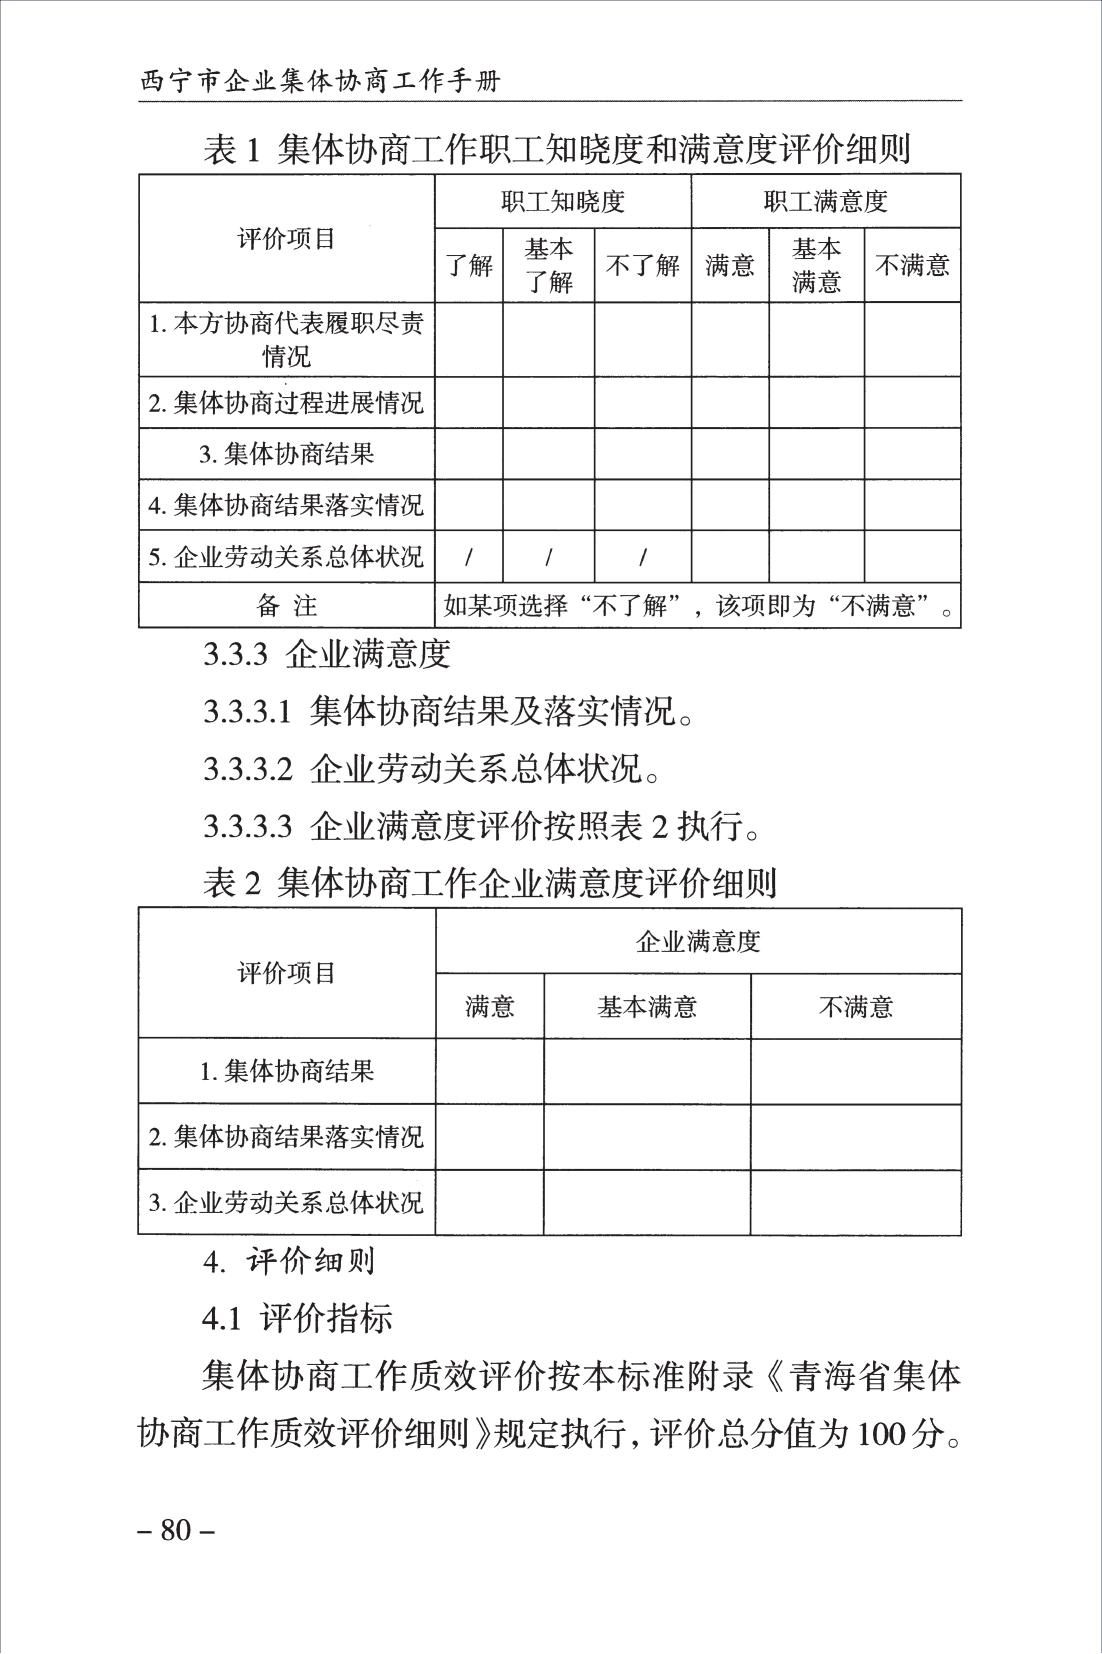 西宁市企业集体协商工作手册_82.jpg